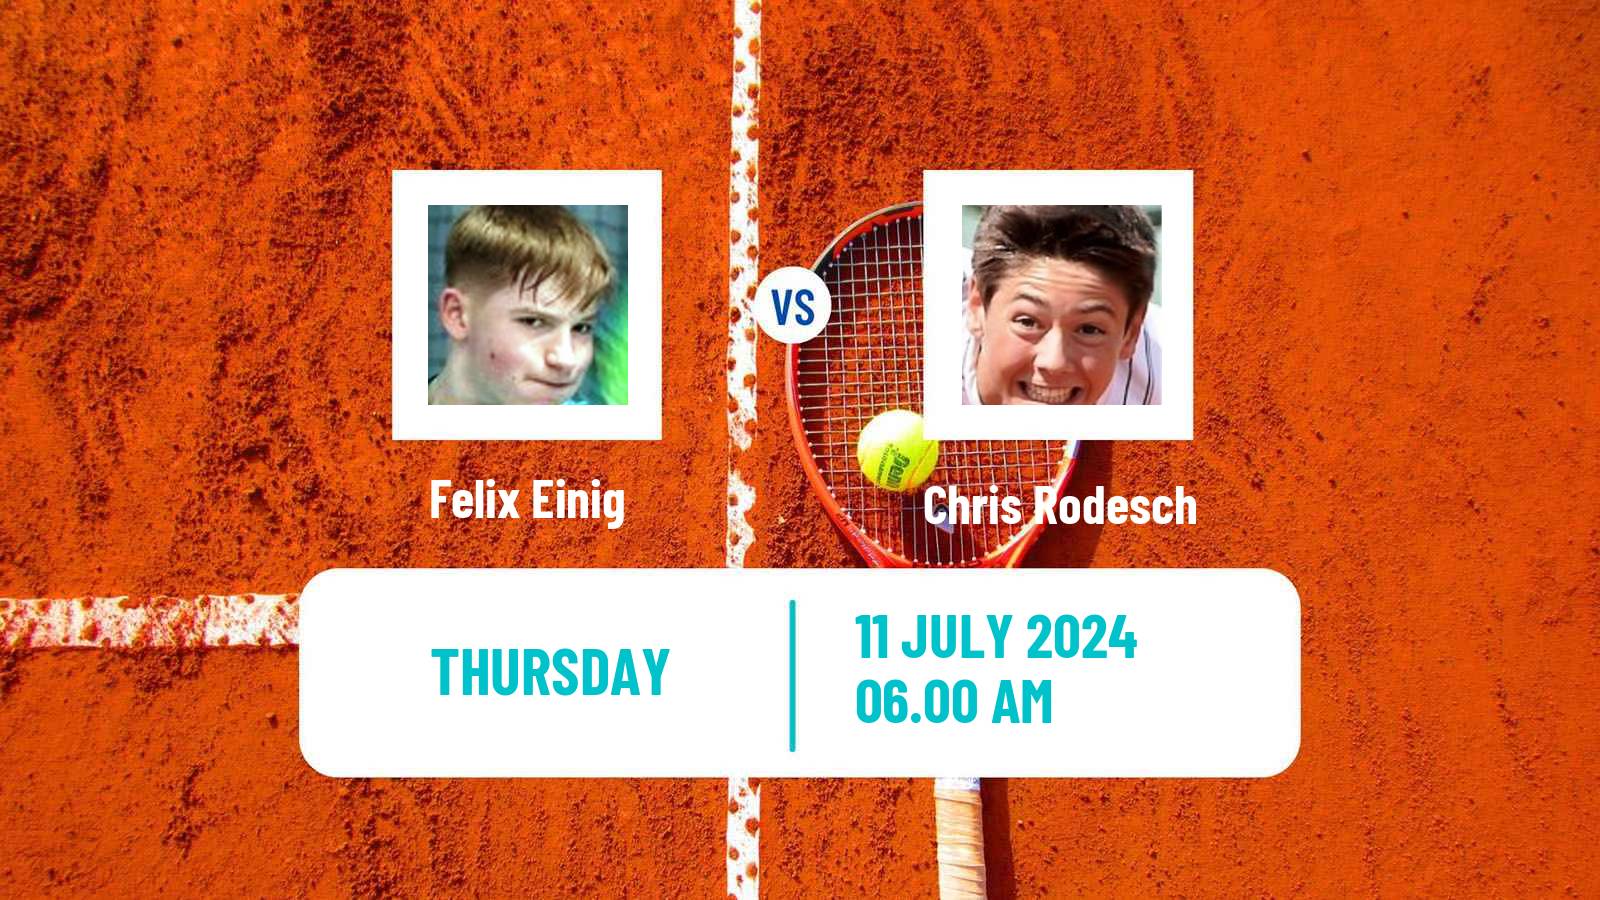 Tennis ITF M15 Lodz Men Felix Einig - Chris Rodesch